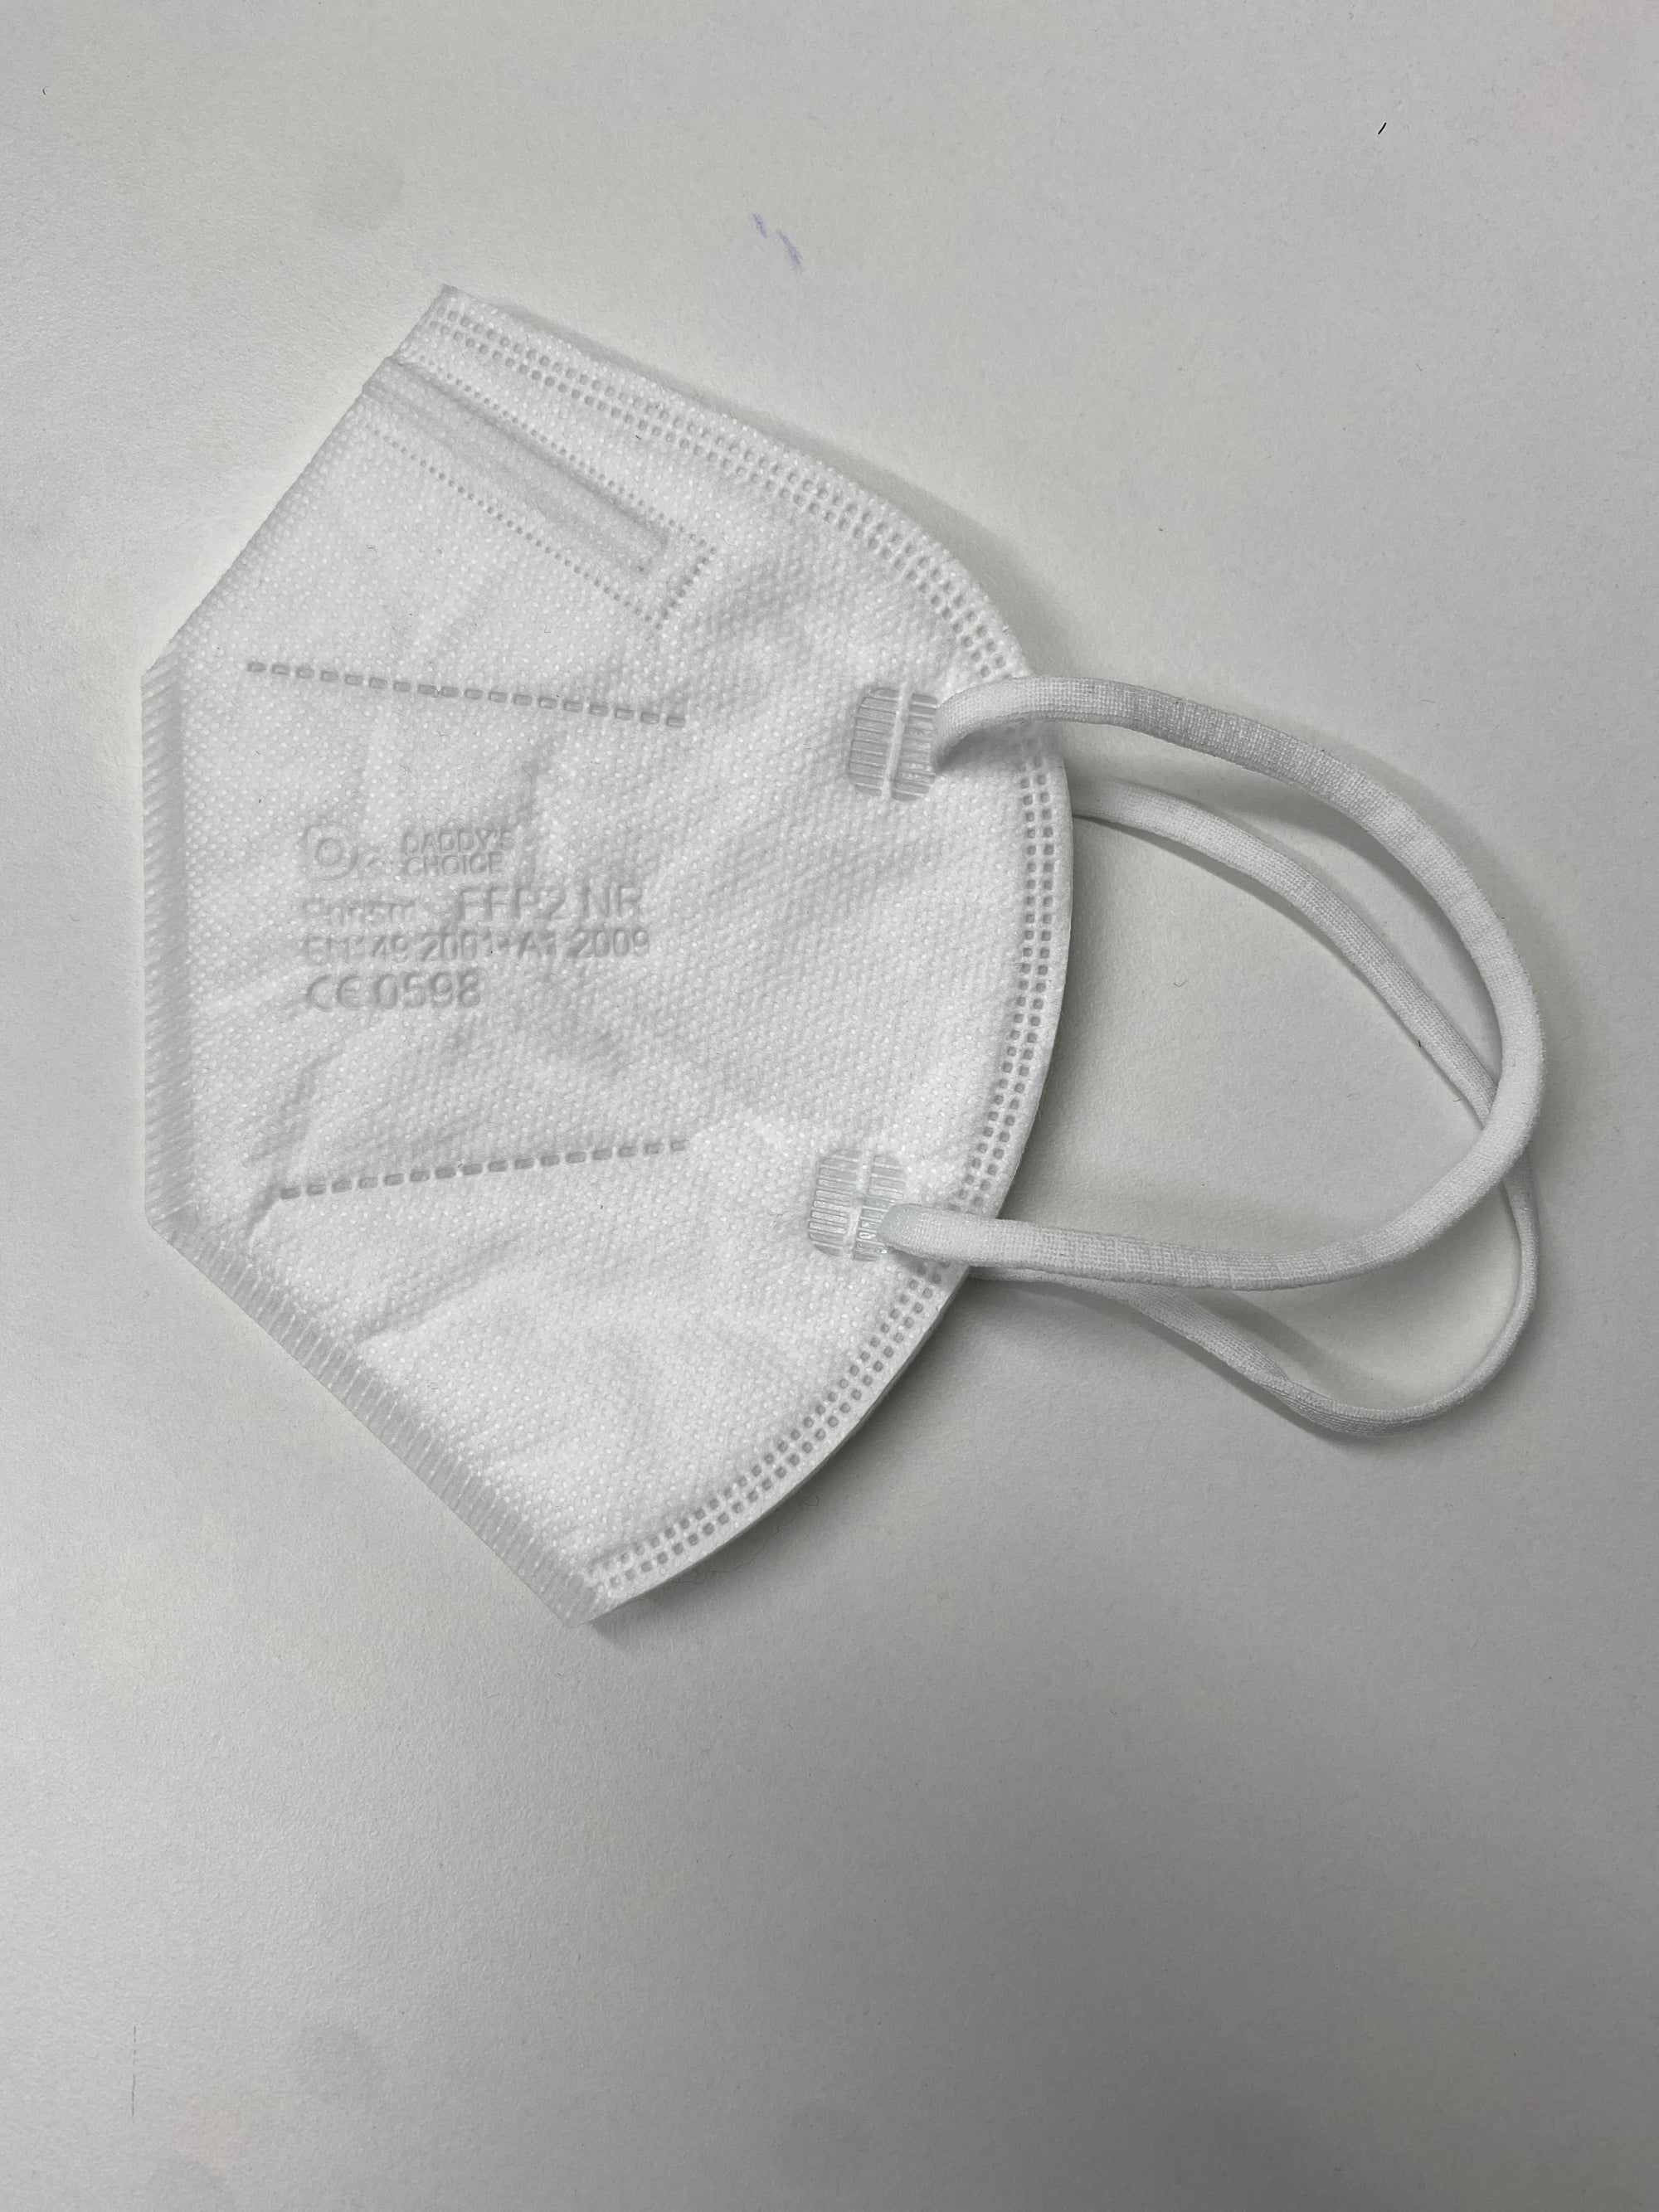 FFP2 Atemschutzmaske Comfort - (CE0598)